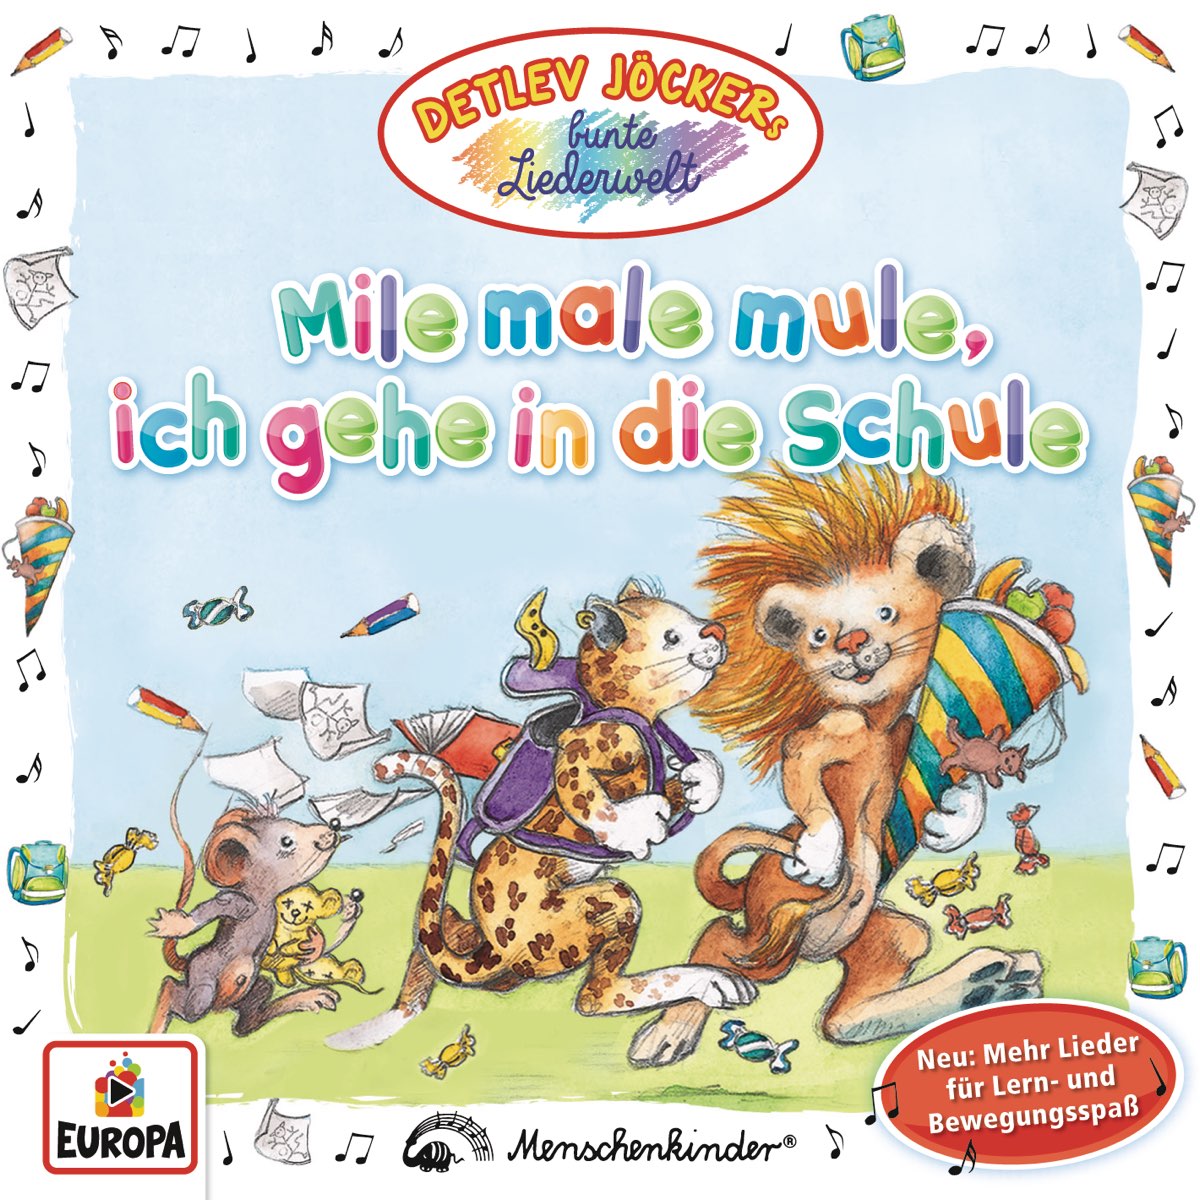 Альбом "Mile male mule, ich gehe in die Schule" (Detlev Jöcker) .